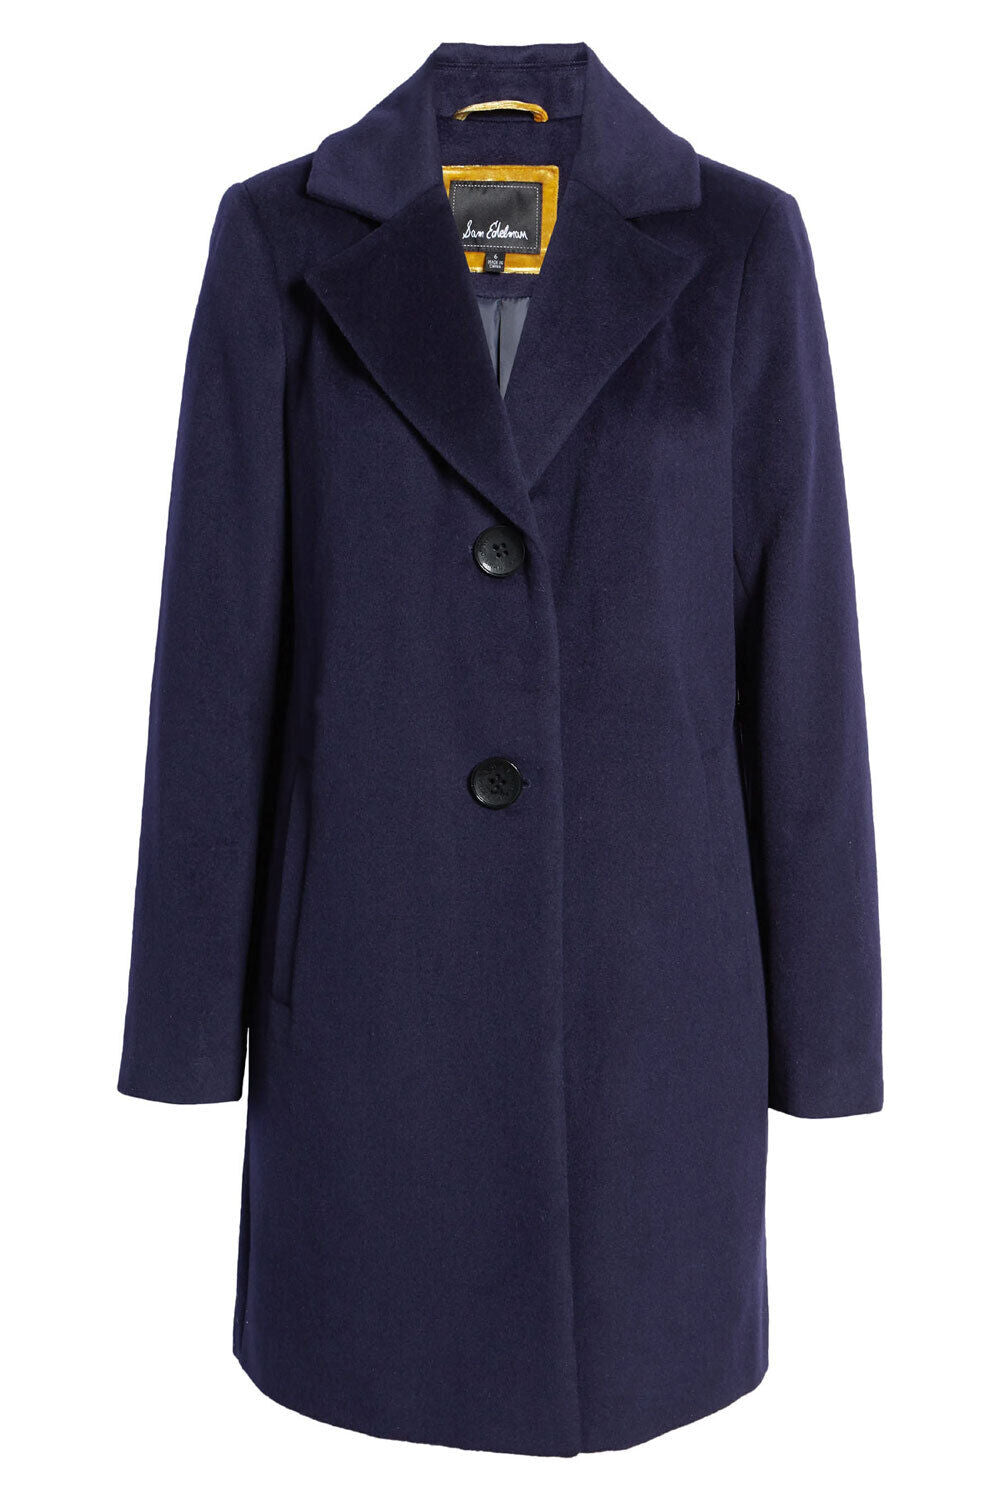 Sam Edelman Indigo 95% Wool Dress Coat